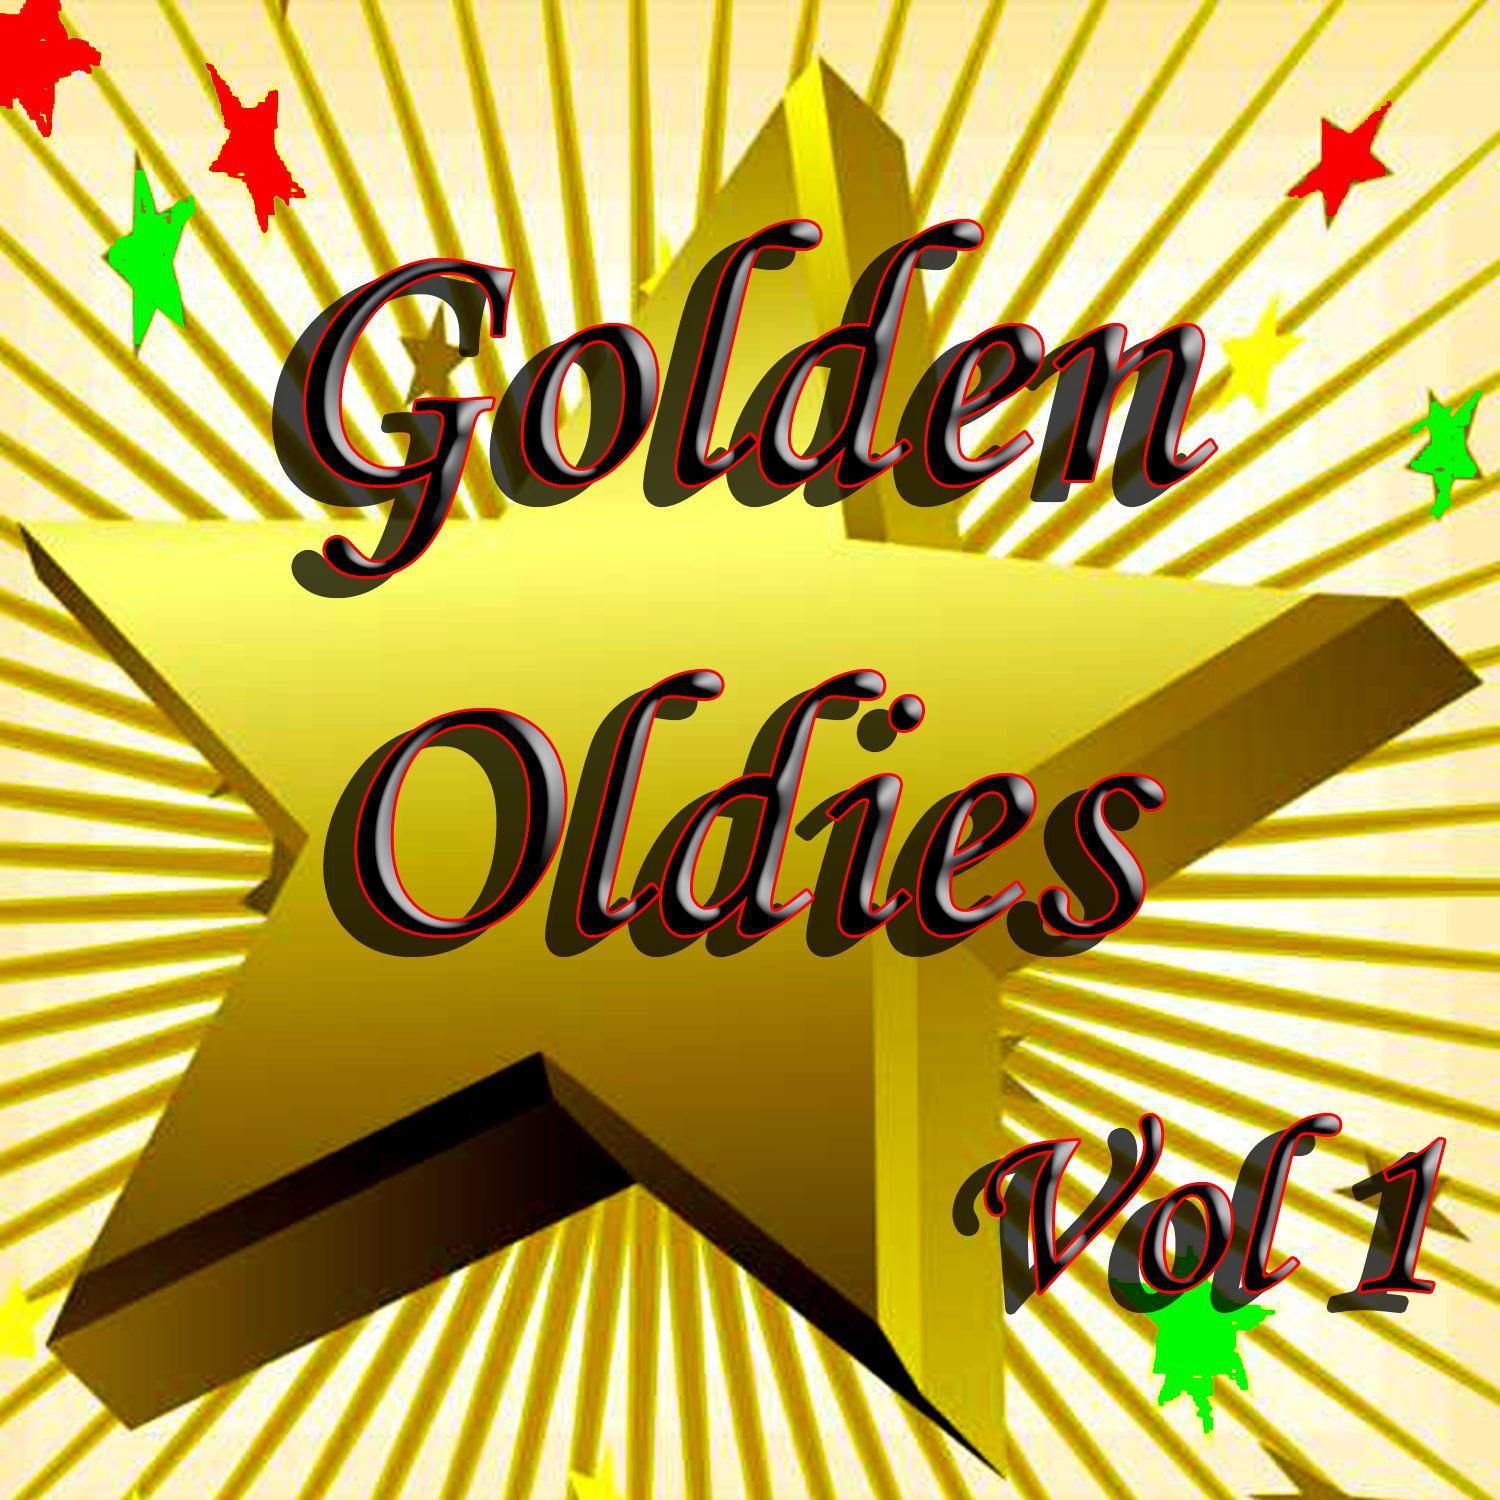 Golden Oldies Vol 1